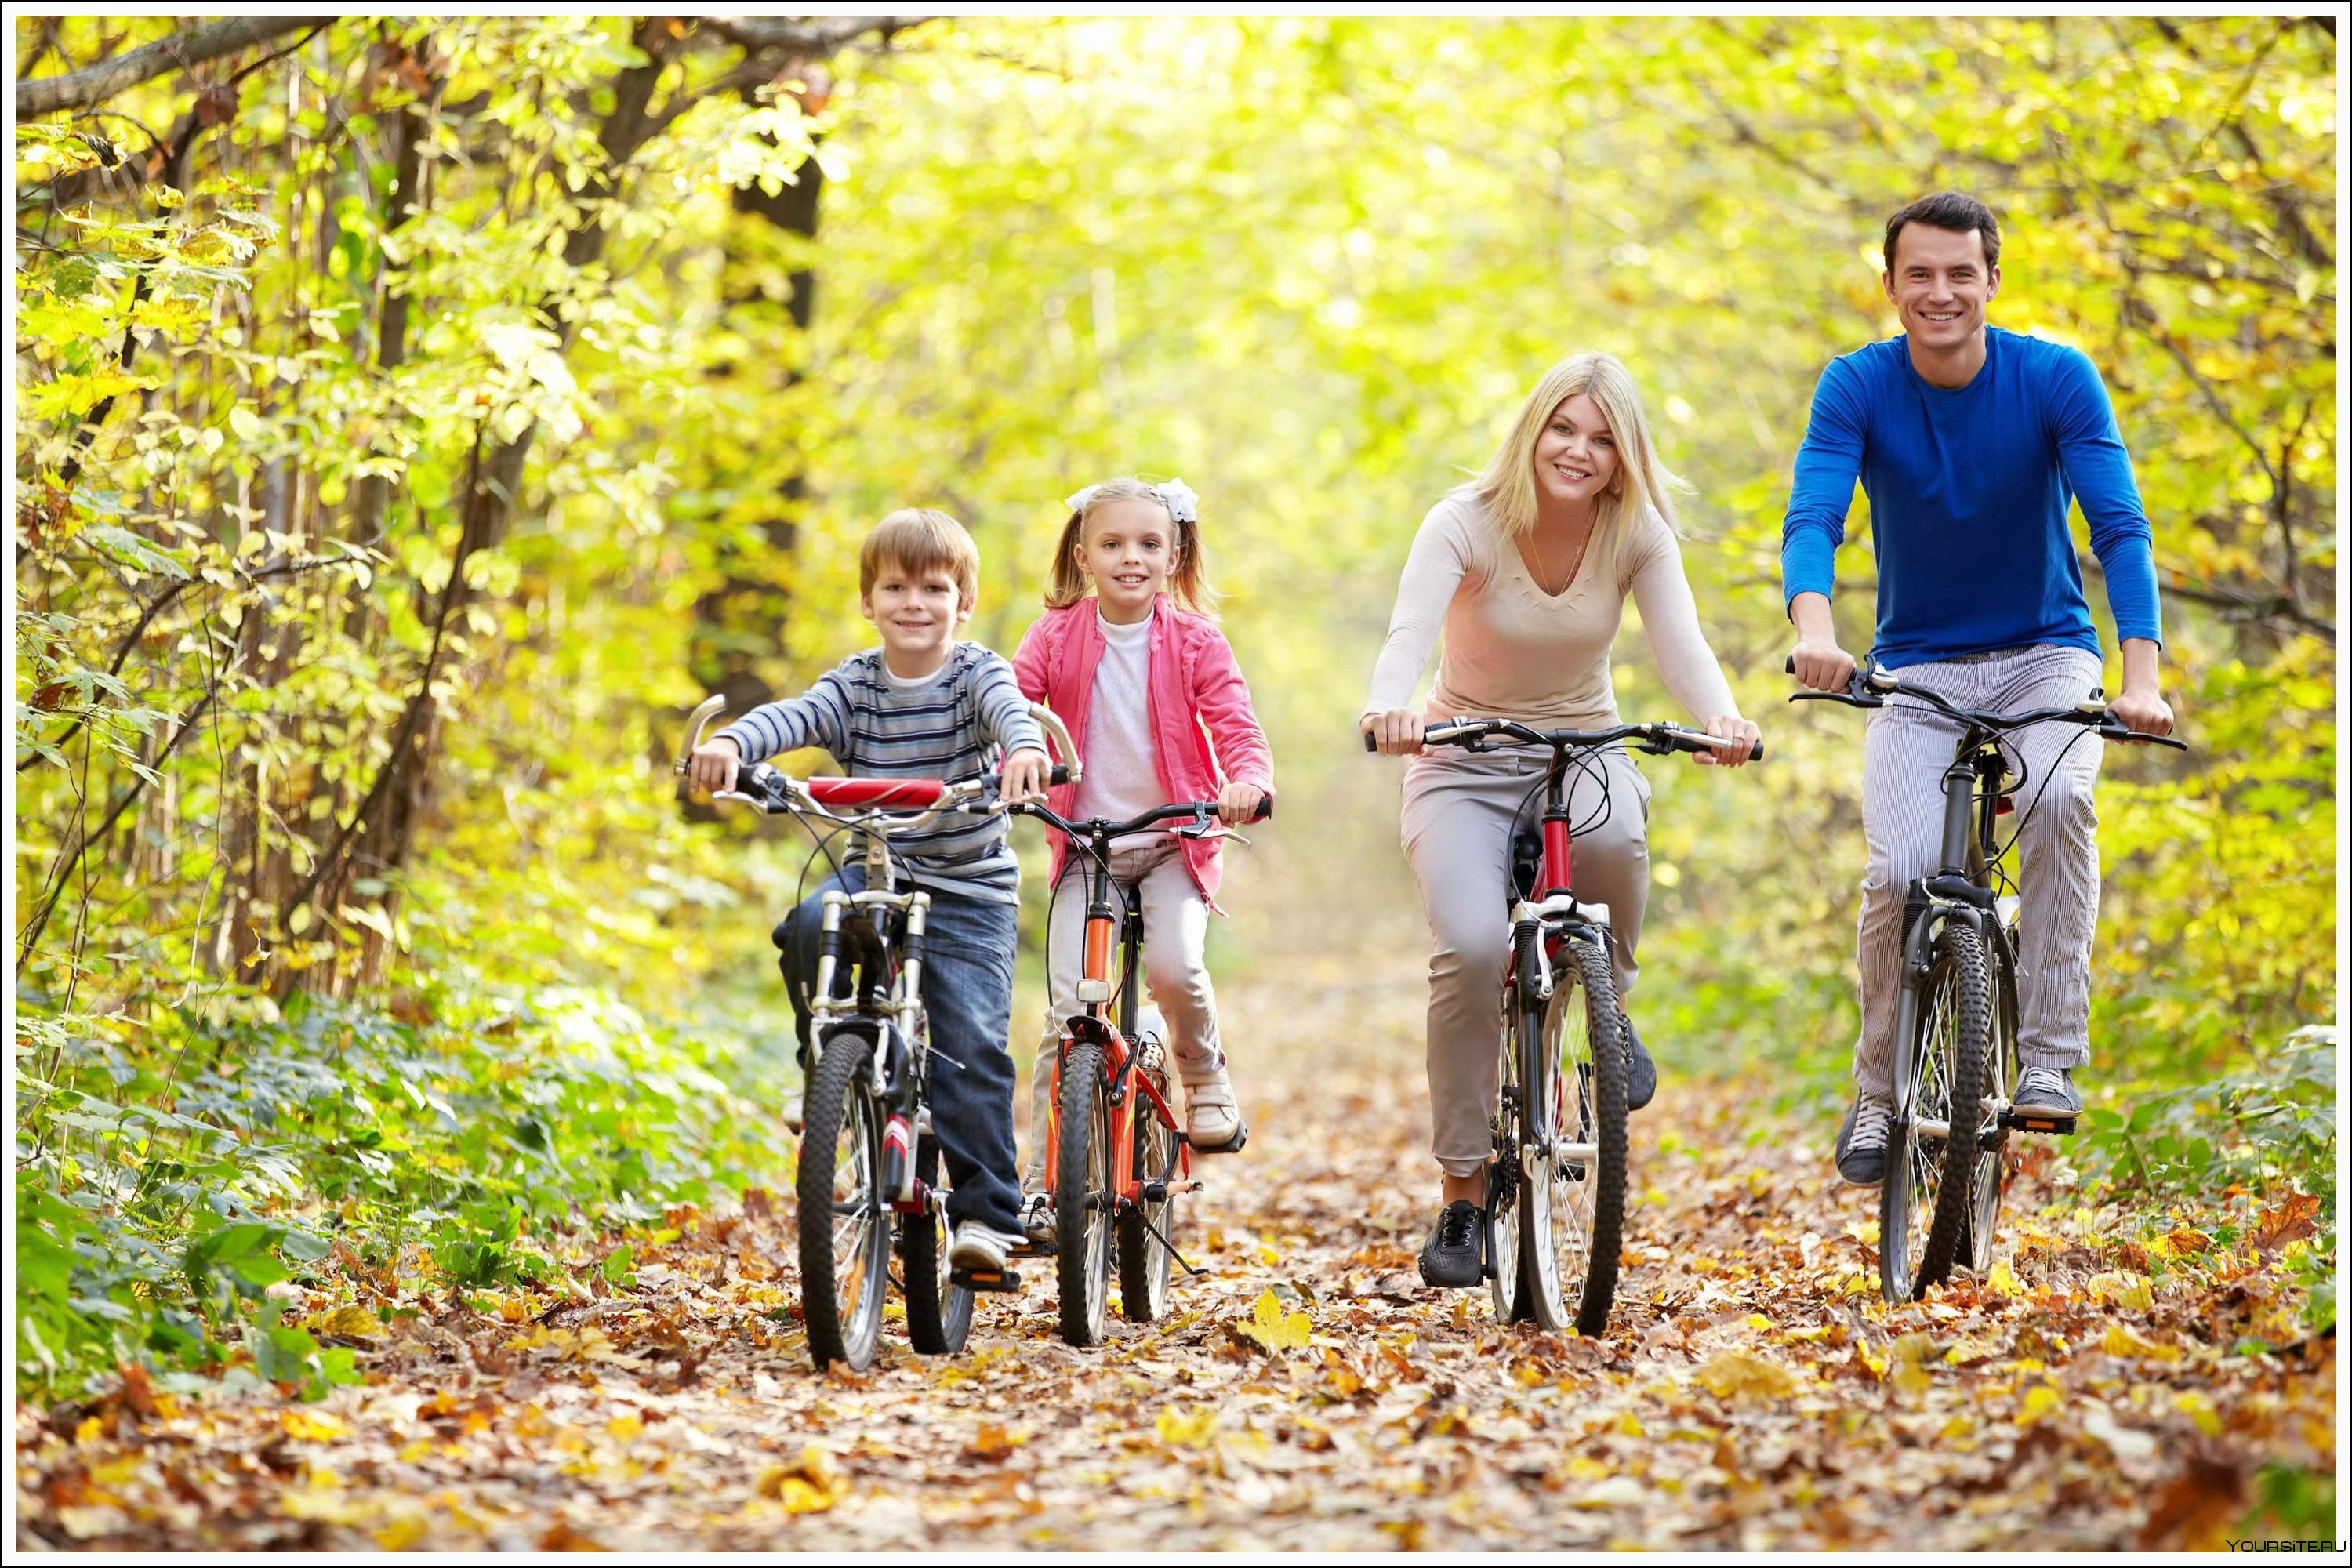 Погулять на свежем воздухе. Прогулки на свежем воздухе. Семья на прогулке. Прогулка на природе. Семья на велосипедах.